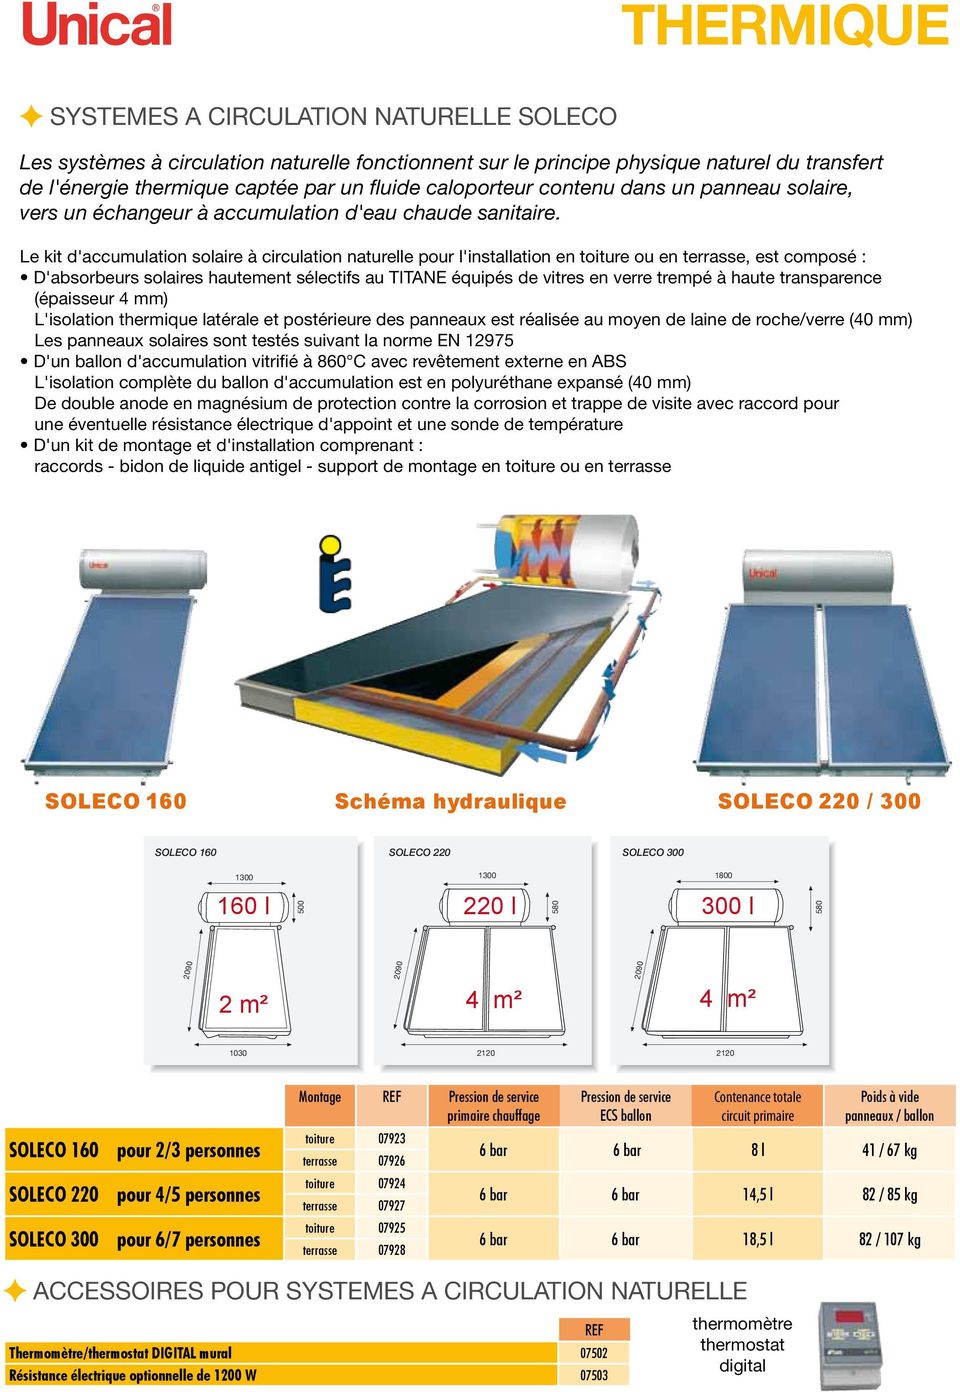 Le kit d'accumulation solaire à circulation naturelle pour l'installation en toiture ou en terrasse, est composé : D'absorbeurs solaires hautement sélectifs au TITANE équipés de vitres en verre